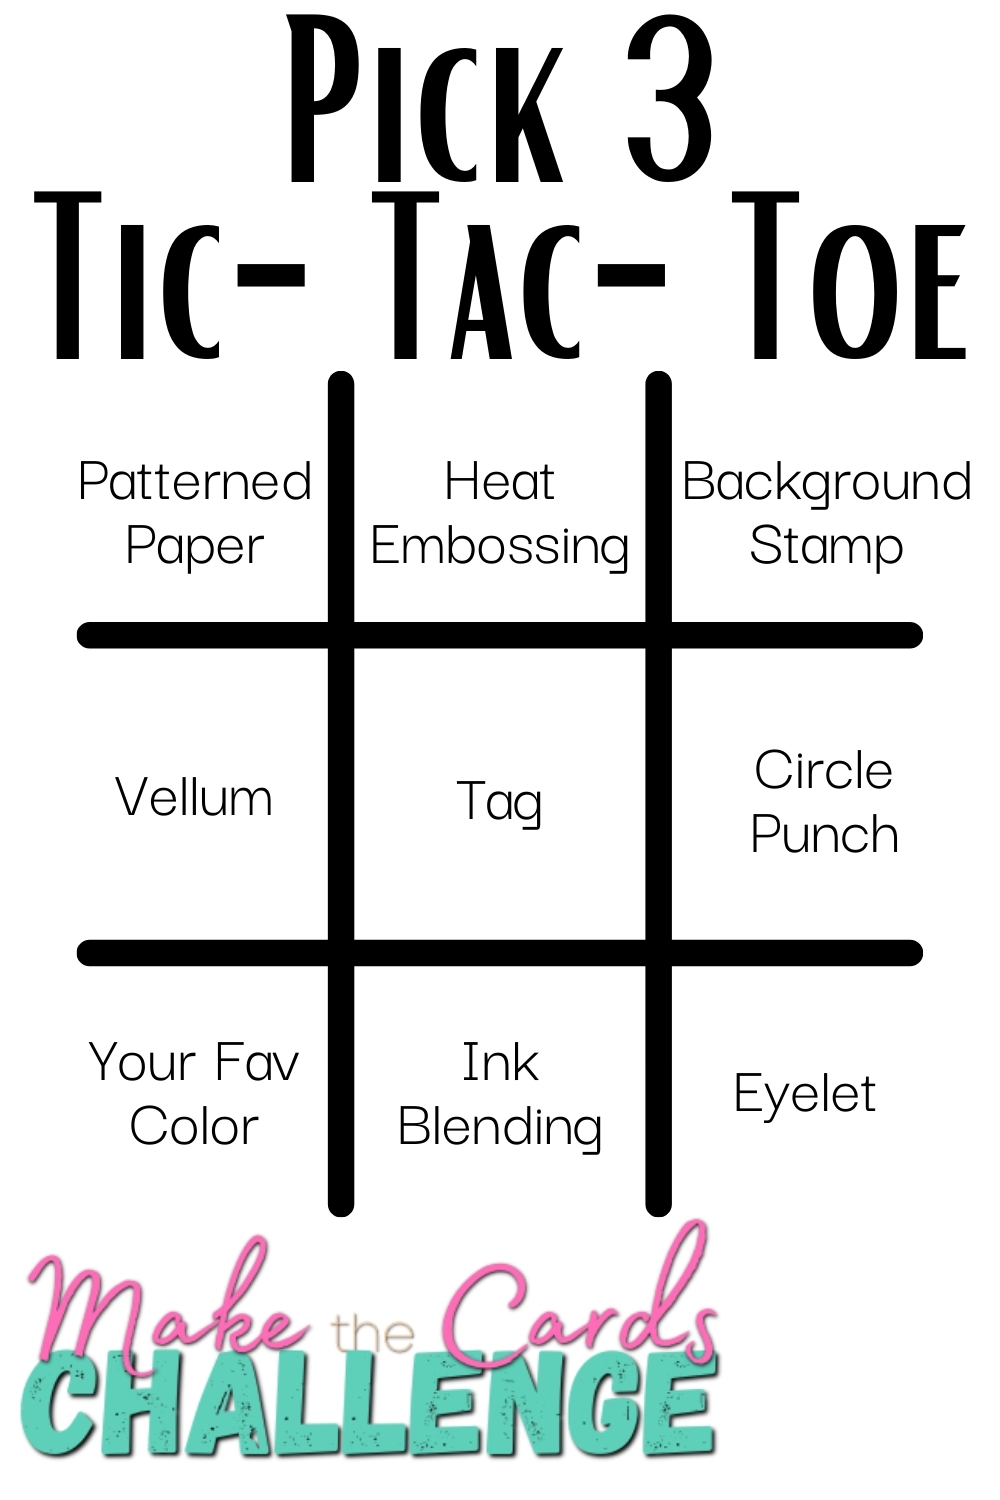 Tic-Tac-Toe Challenge